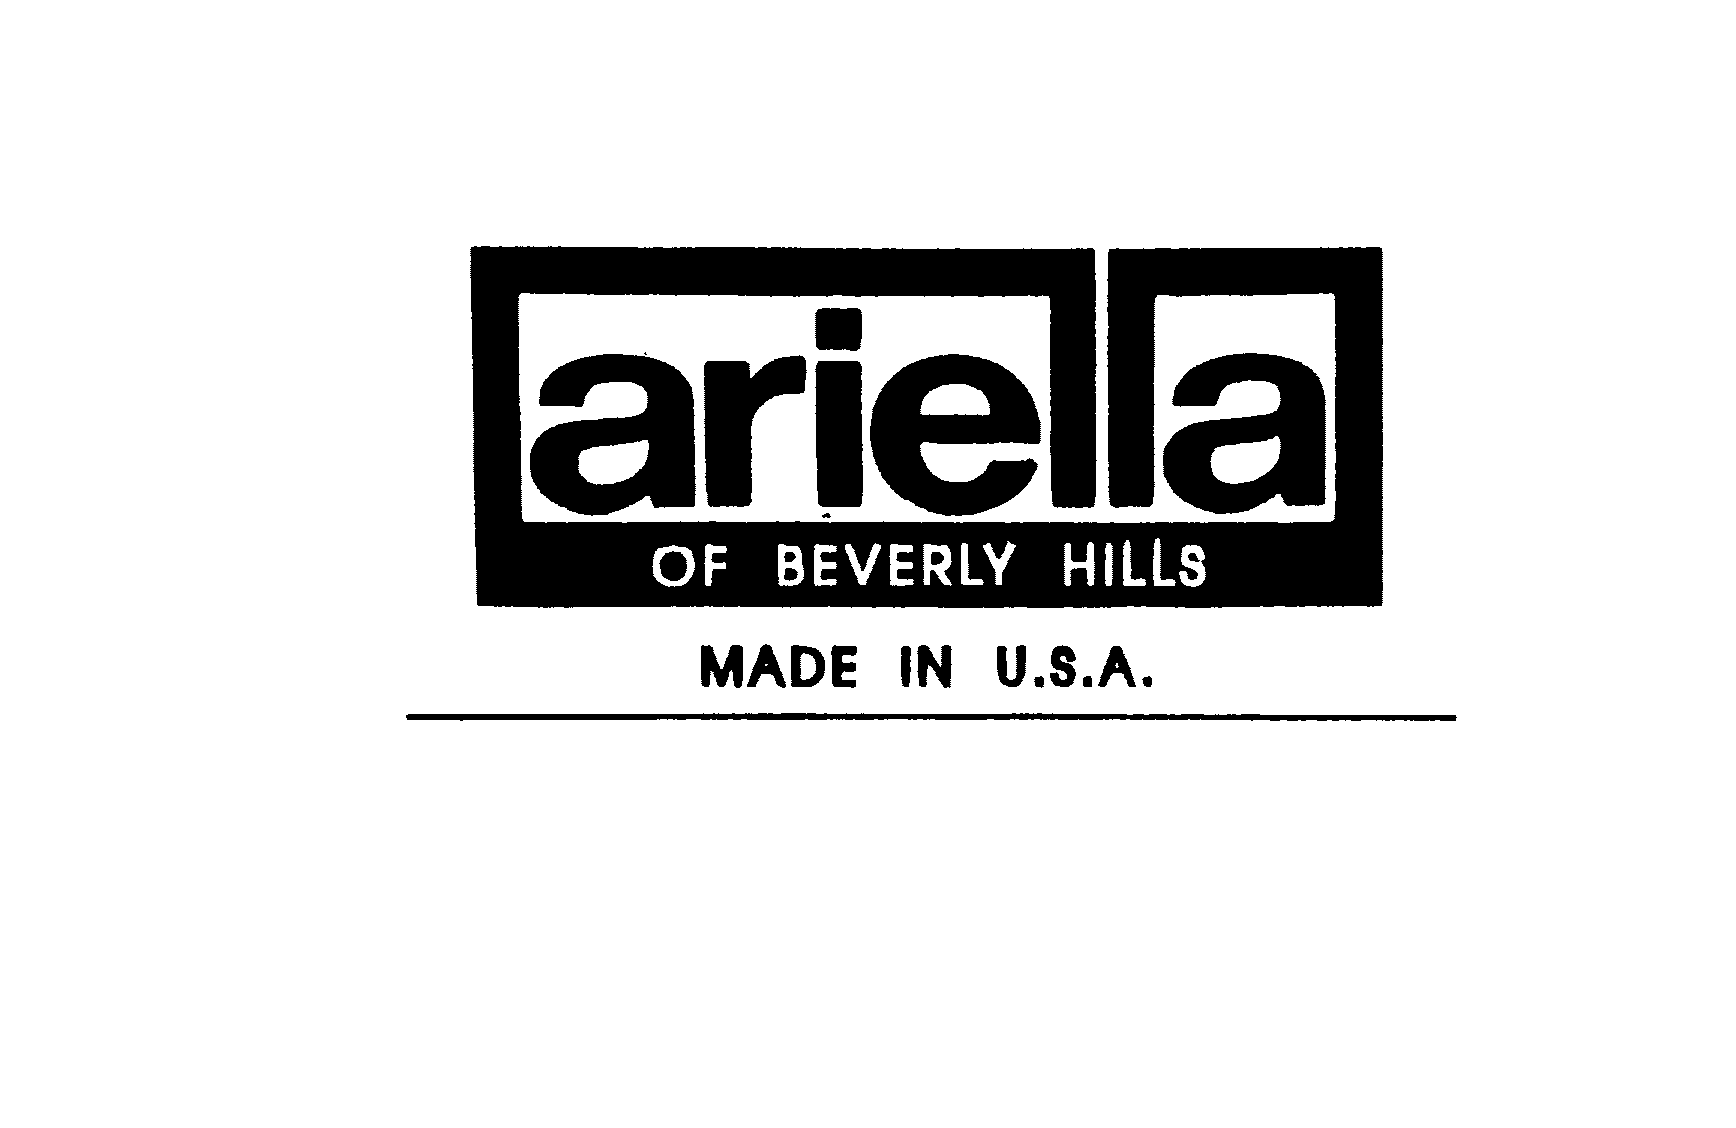  ARIELLA OF BEVERLY HILLS MADE IN U.S.A.